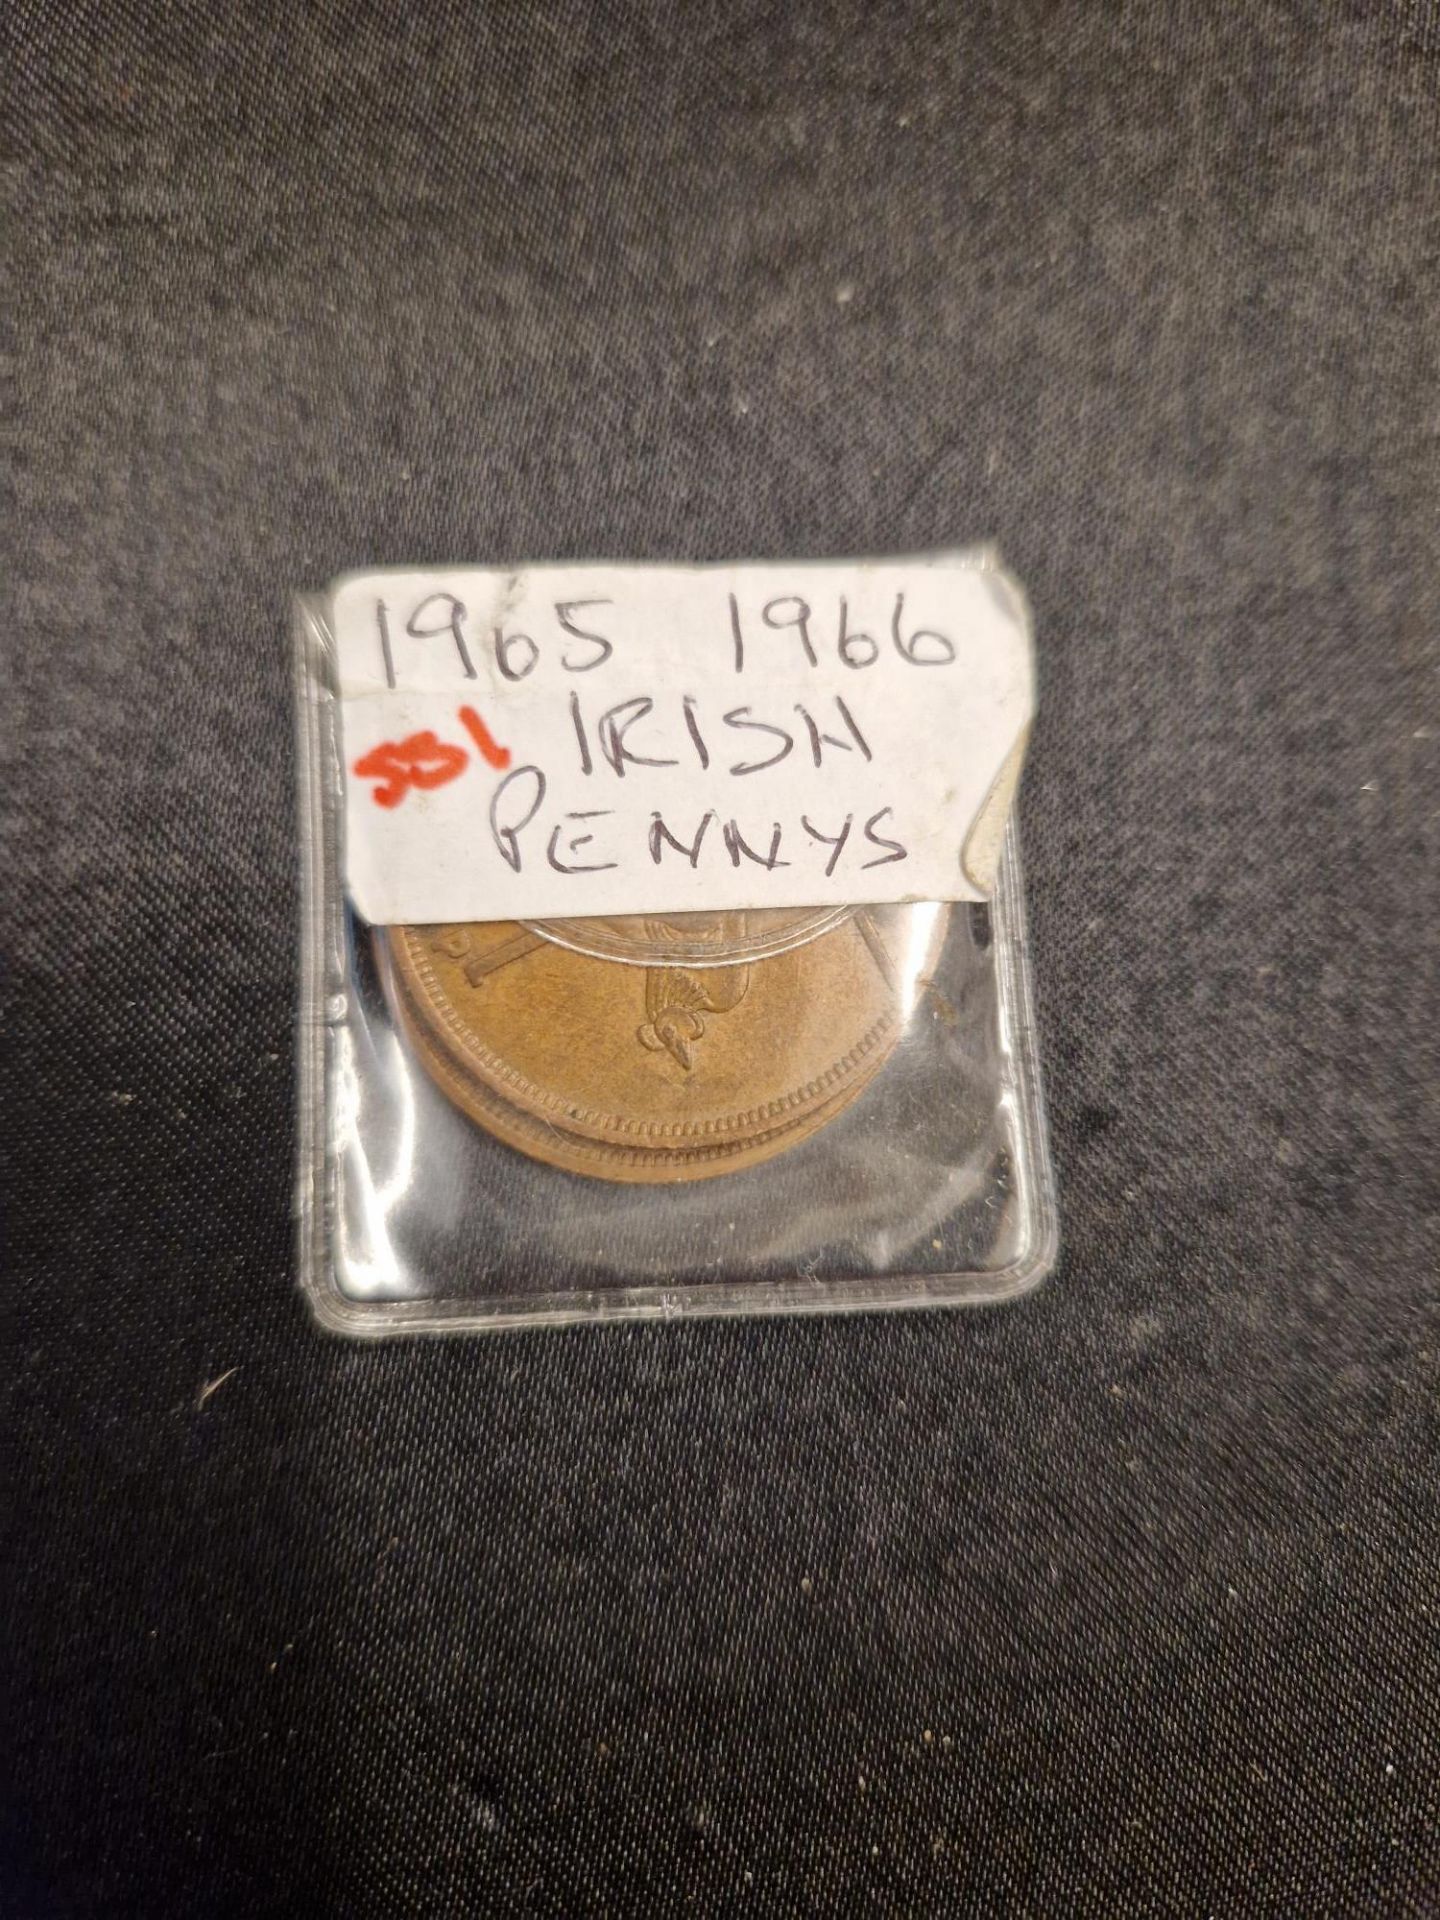 1965 1966 irish pennys